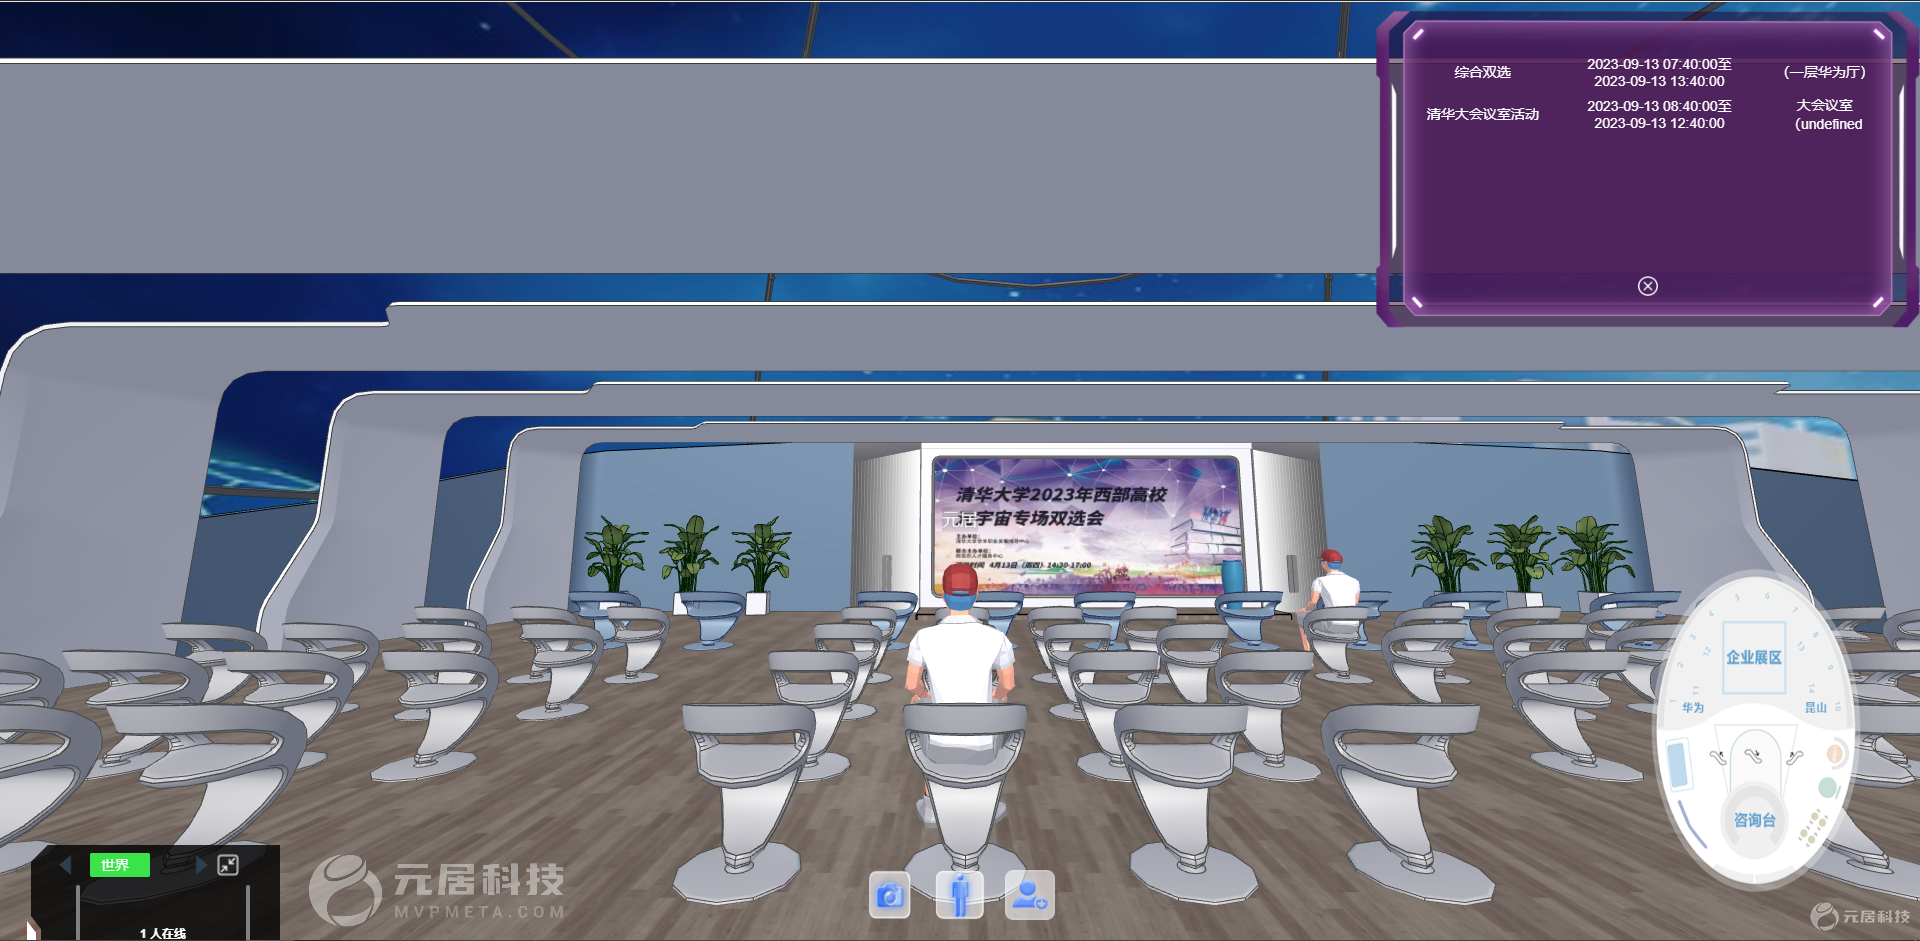 3D虚拟会议室